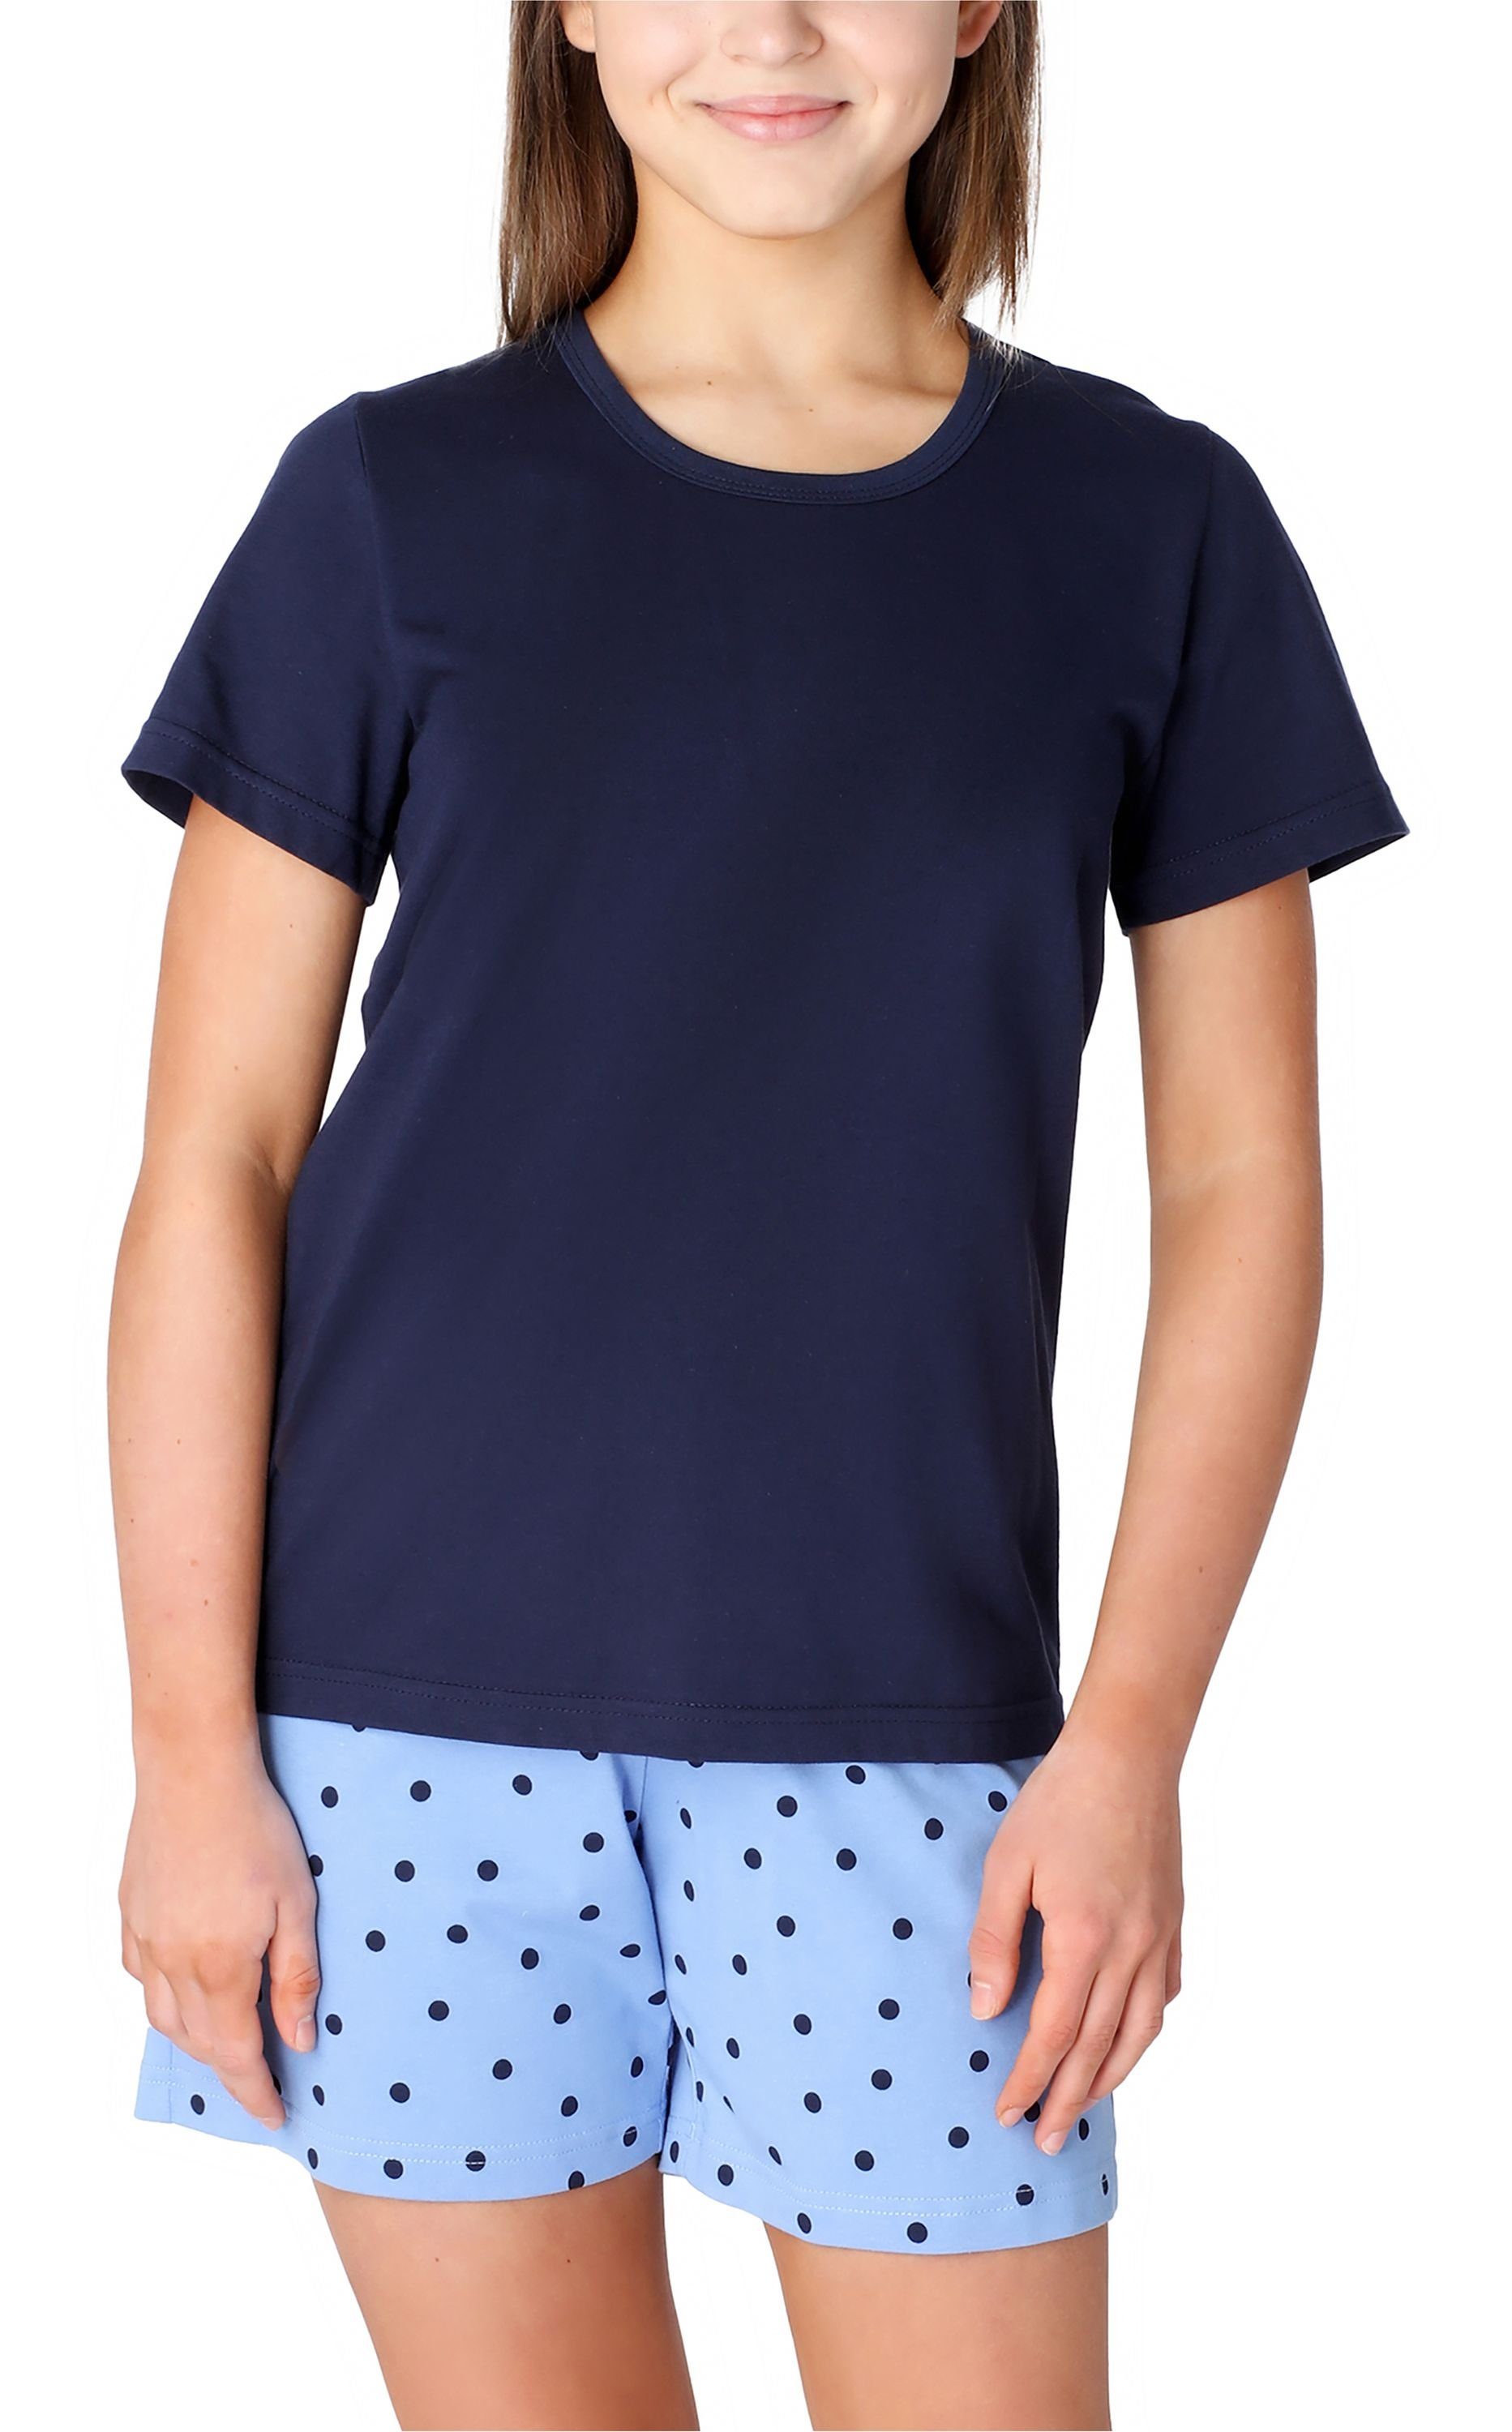 Merry Style Schlafanzug Mädchen Schlafanzüge Kurz aus Baumwolle Pyjama Set MS10-265 Marine/Blau/Punkte | Pyjamas